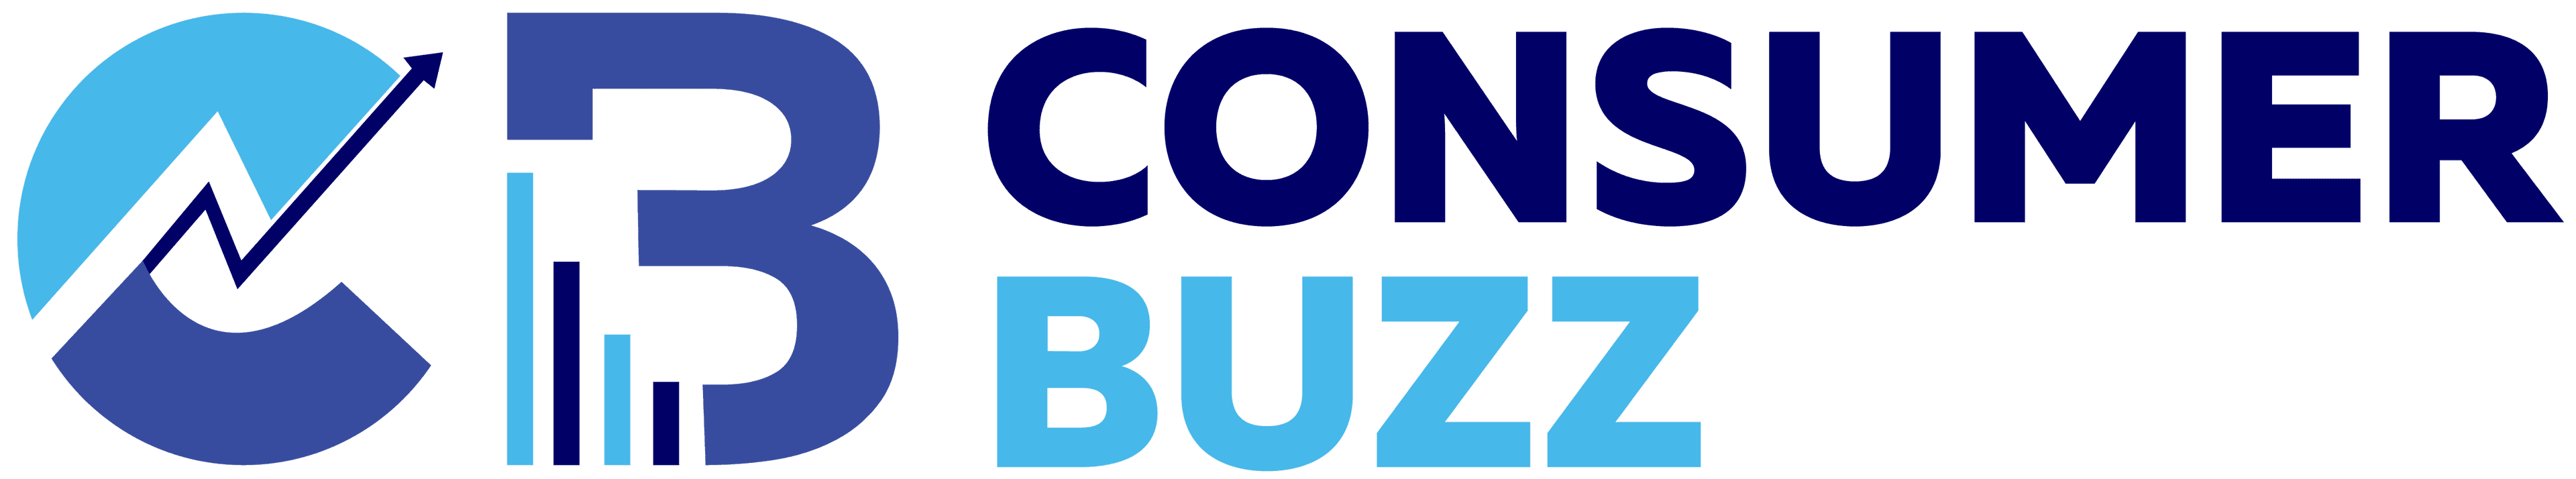 consumerbuzz logo